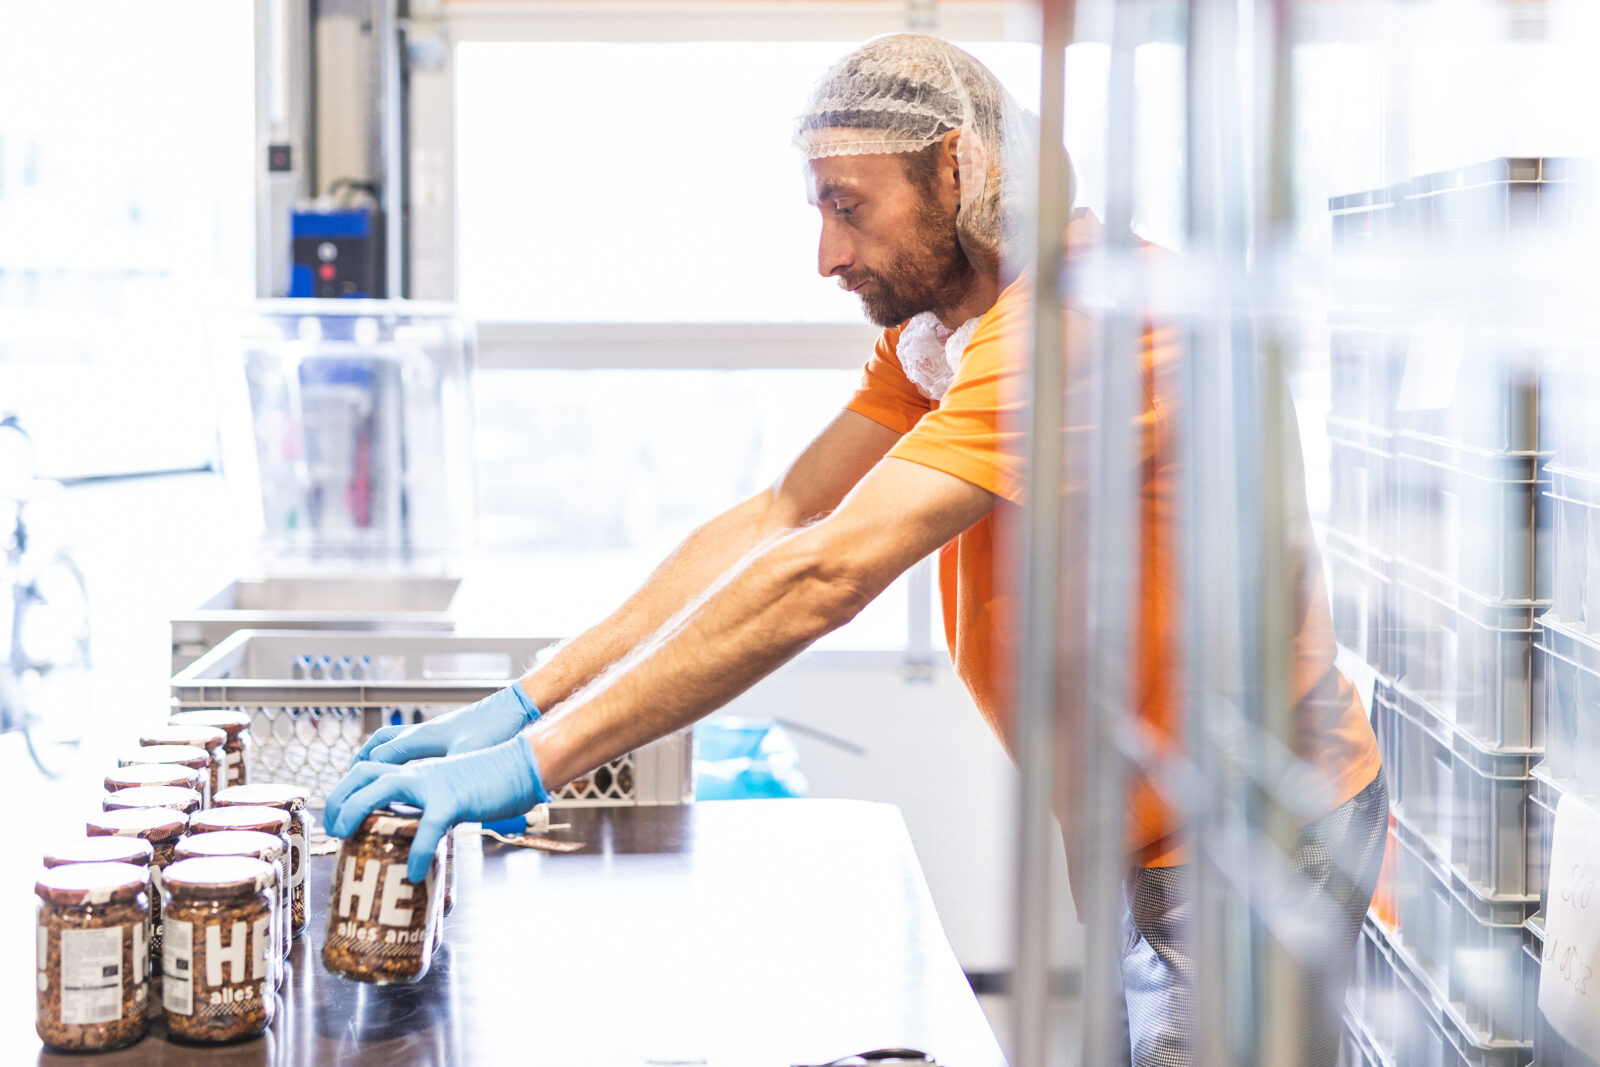 Daniel steht in der Produktionshalle. Er ist von der Seite zu sehen. Er trägt ein oranges T-Shirt und eine Haube über den Haaren und blaue Kunststoff-Handschuhe. Er räumt Müsli-Gläser in eine Stiege.